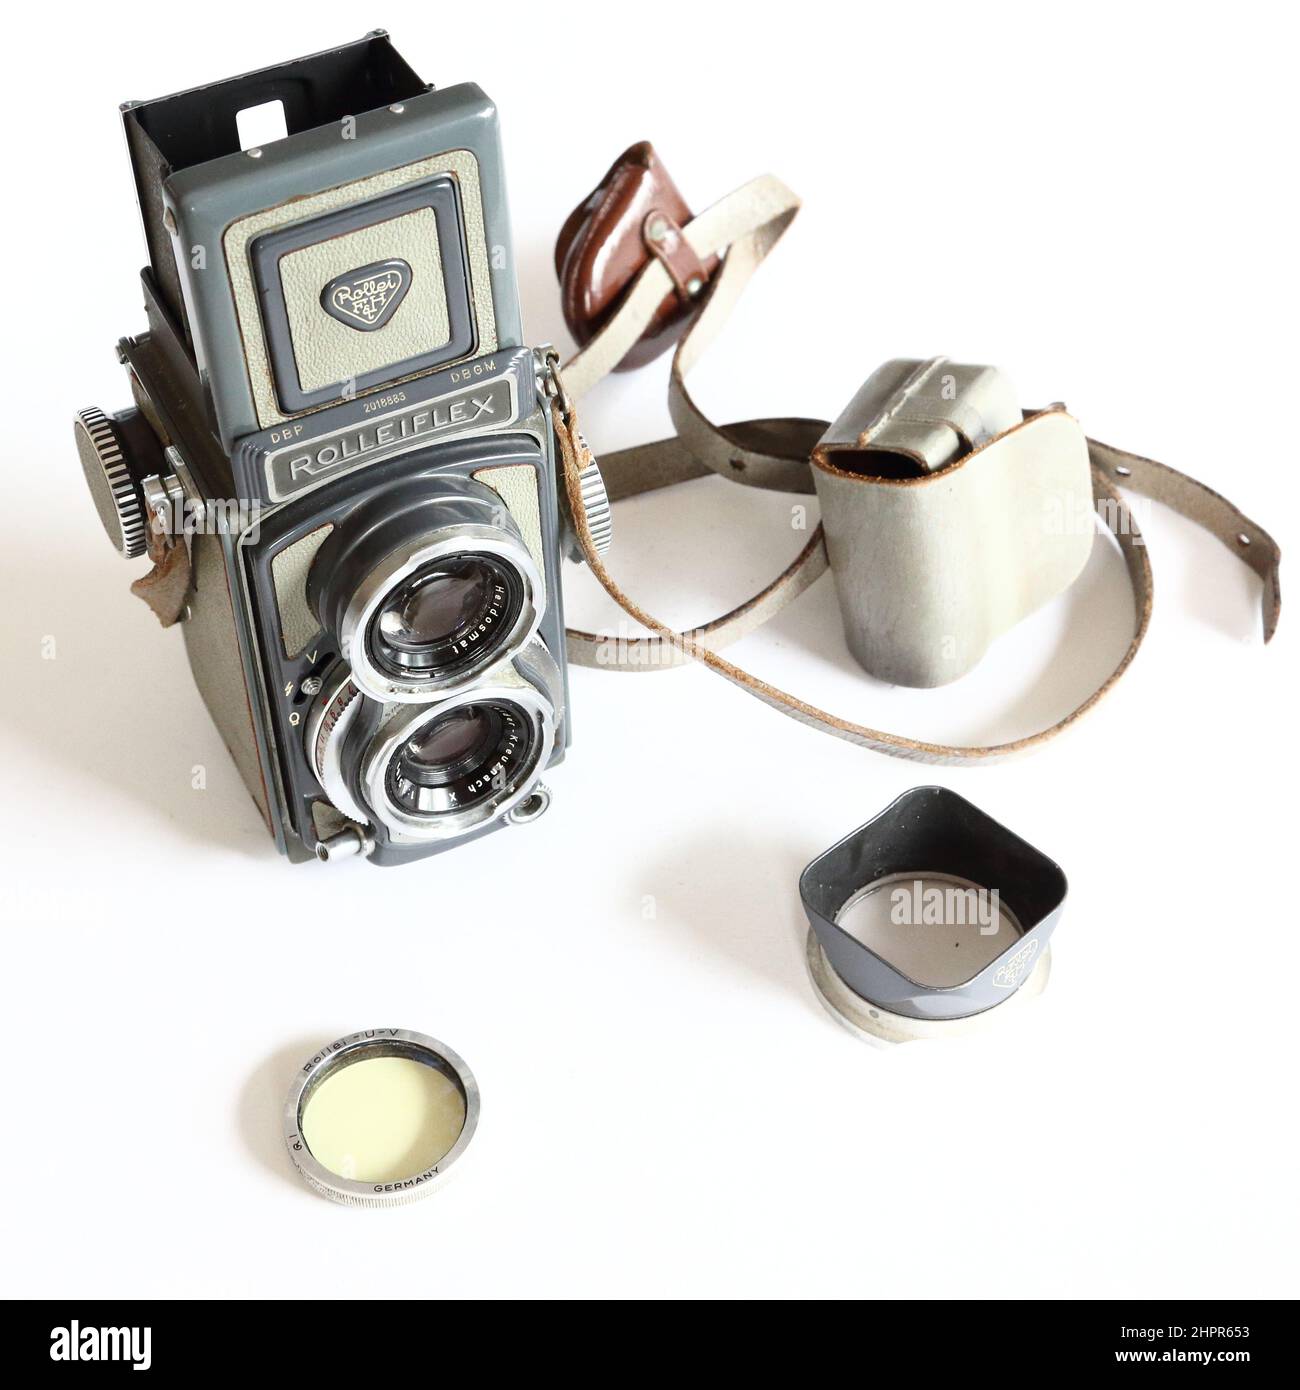 Vintage German Franke & Heidecke Rolleiflex telecamera rlex a doppio obiettivo di medio formato con obiettivo Xenar e accessori Foto Stock